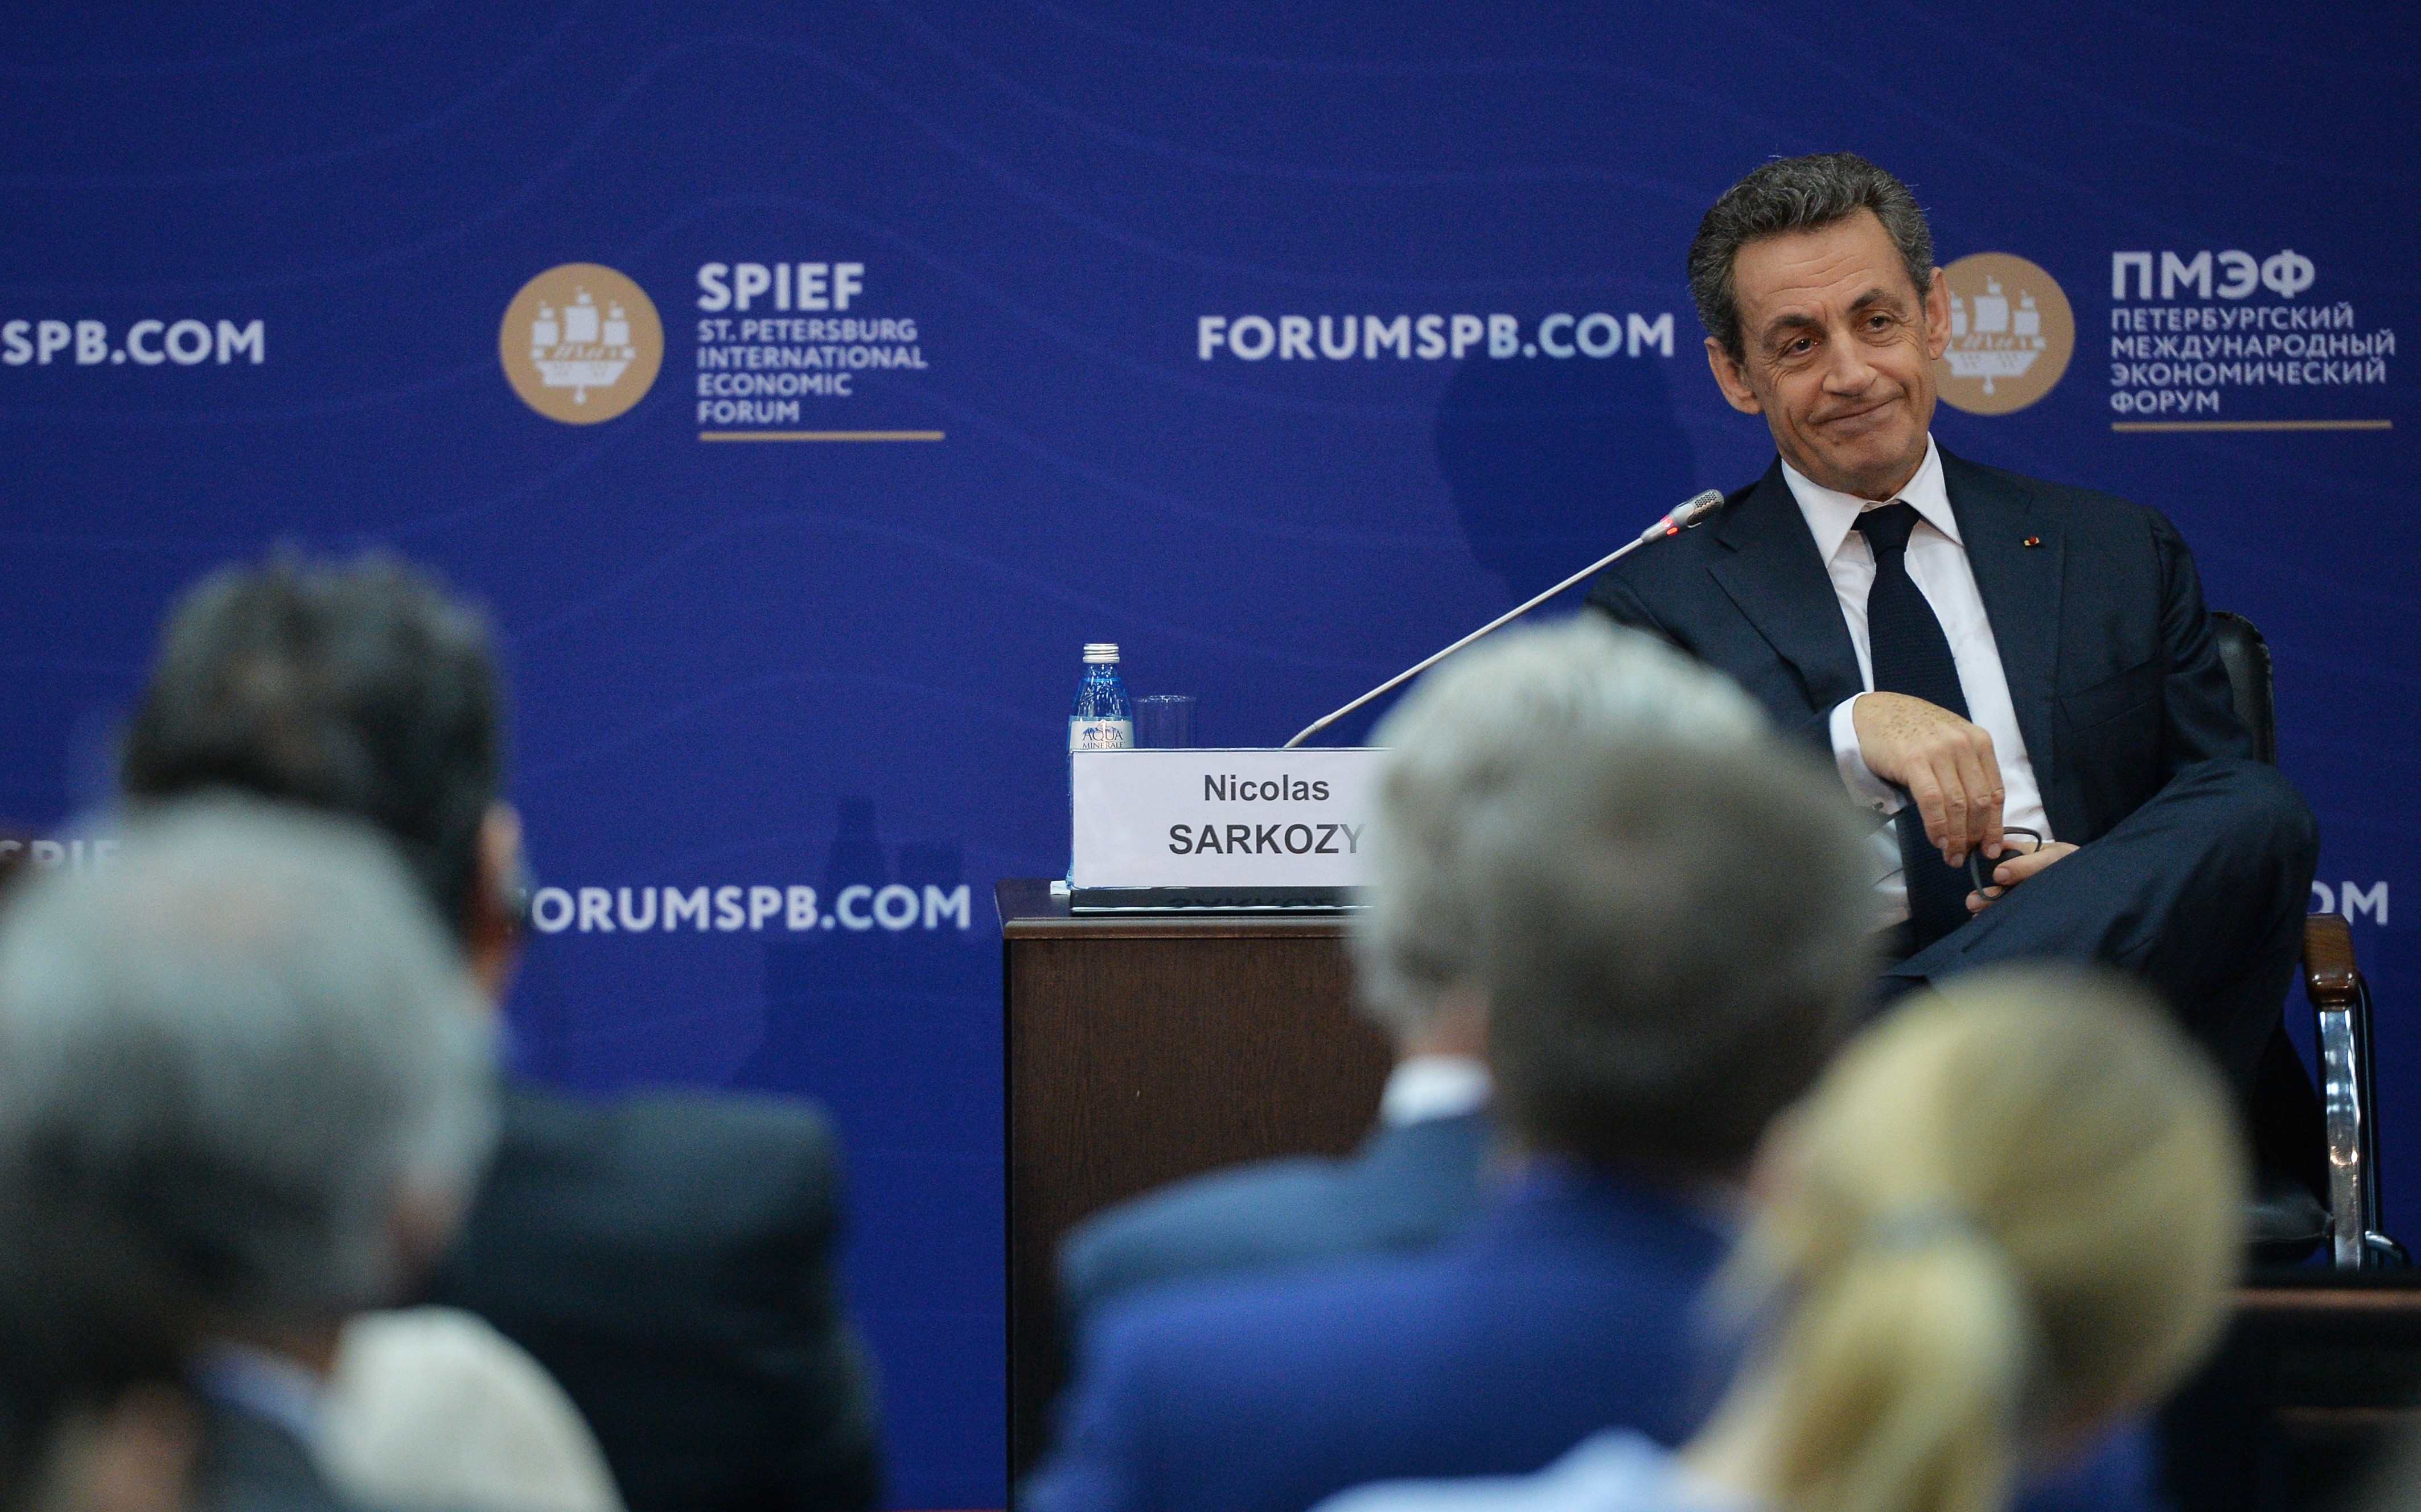 Саркози: Без России нельзя разрешить ни сирийский кризис, ни украинский